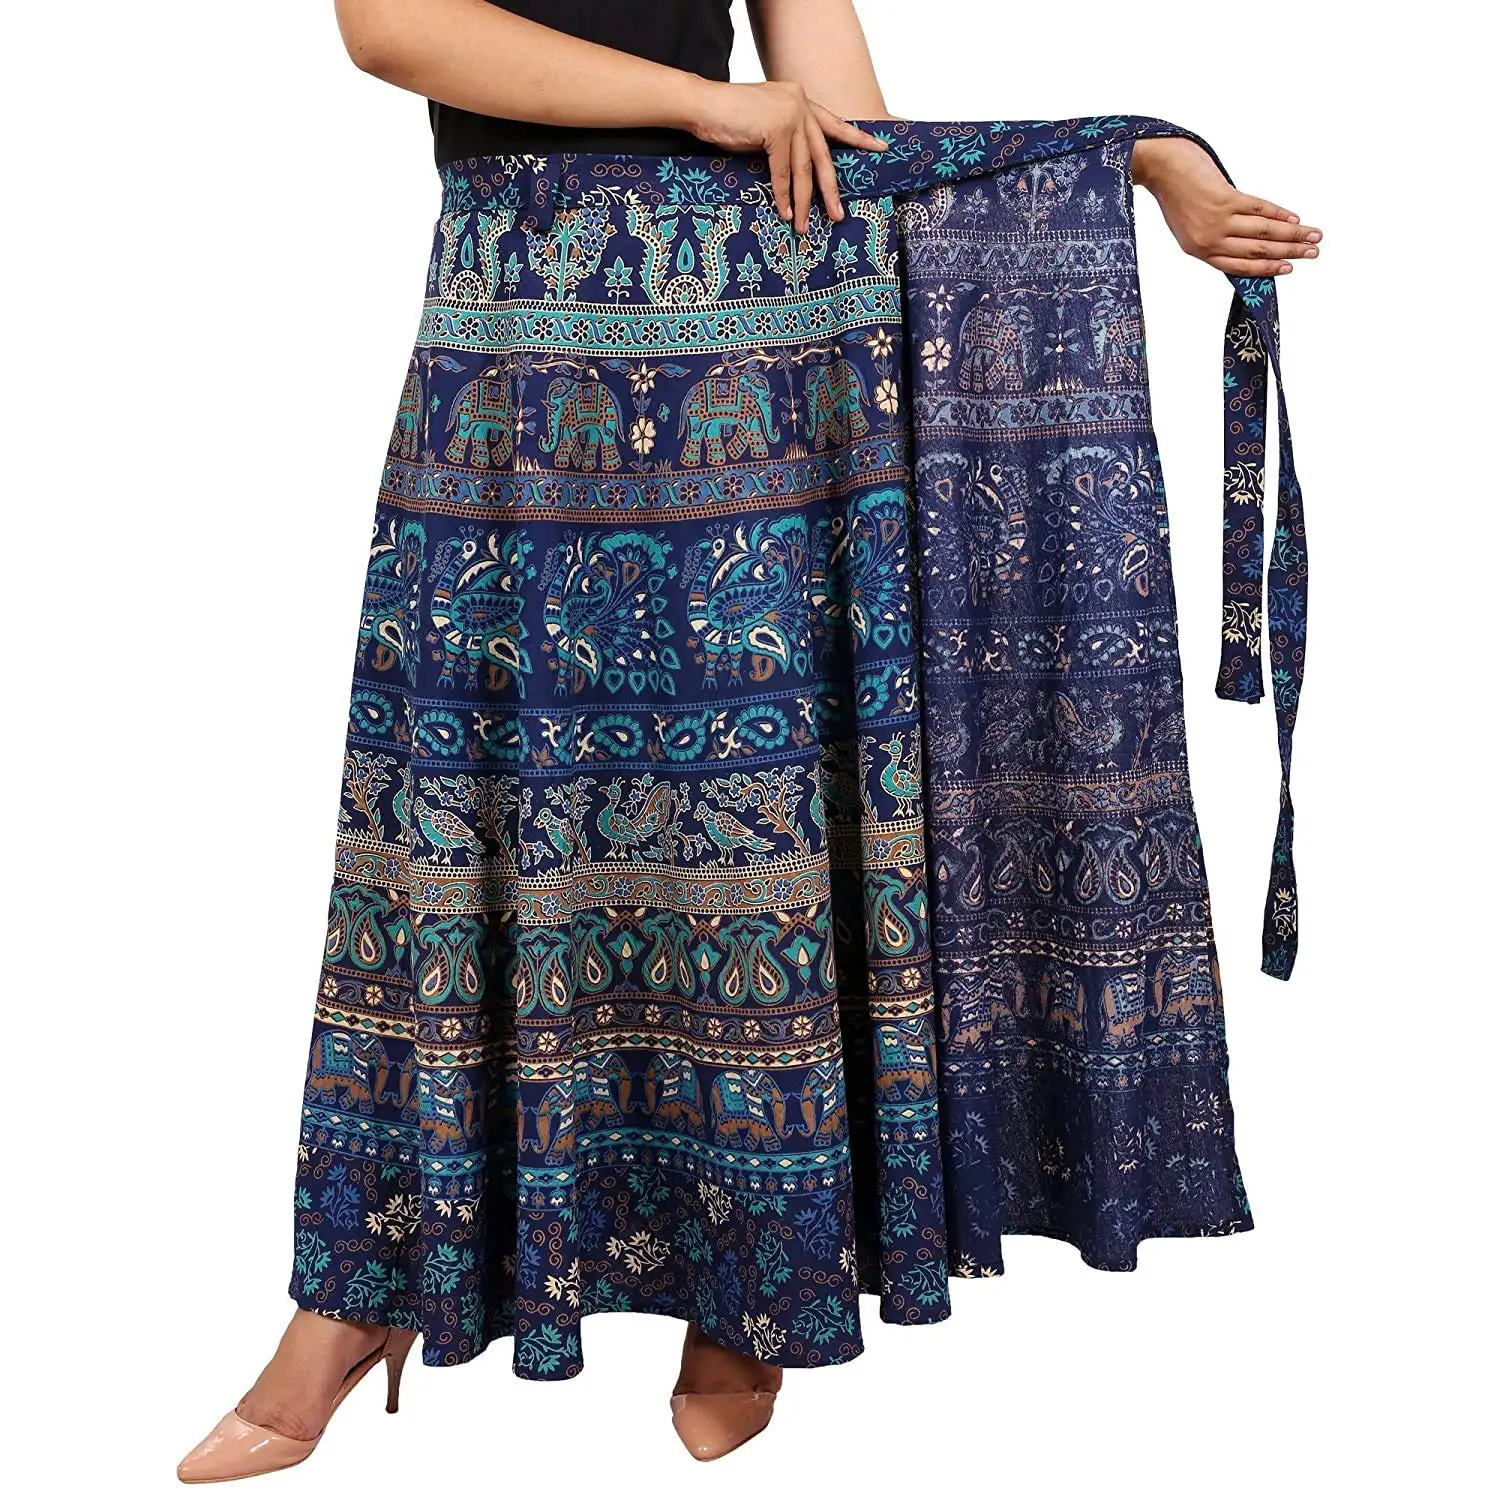 Váy Quấn Hình Động Vật Bằng Cotton Ấn Độ Váy Mặc Đi Biển Váy Đi Tiệc Váy Cotton Gypsy Boho Boho Bollywood Hippie Thời Trang Thường Ngày